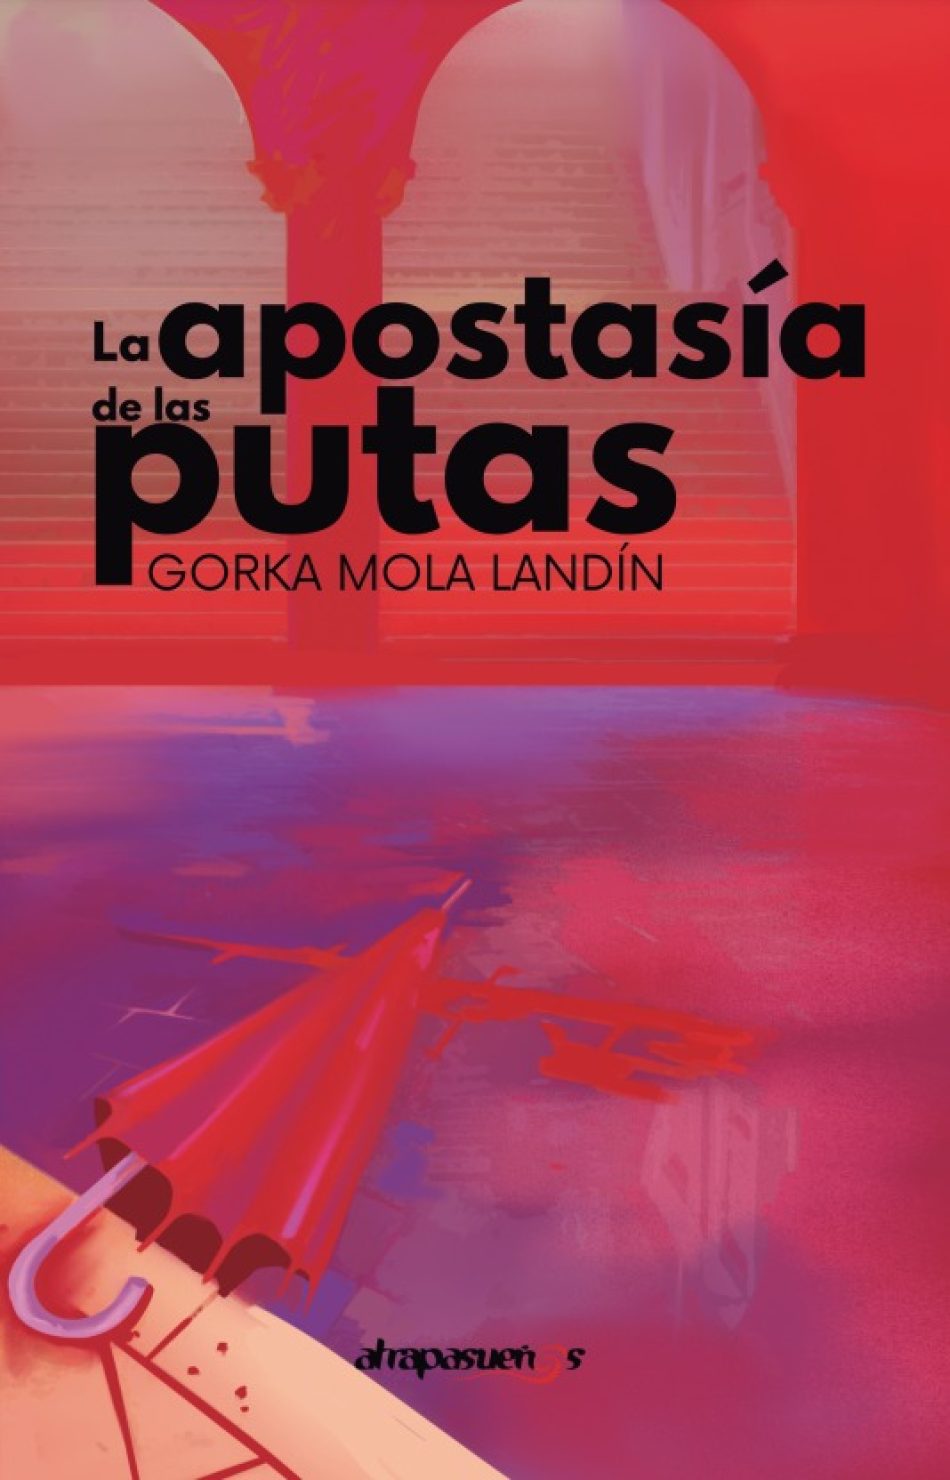 El bilbaino Gorka Landín presenta «La apostasía de las putas», una novela feminista en la semana del 8M en Andalucía